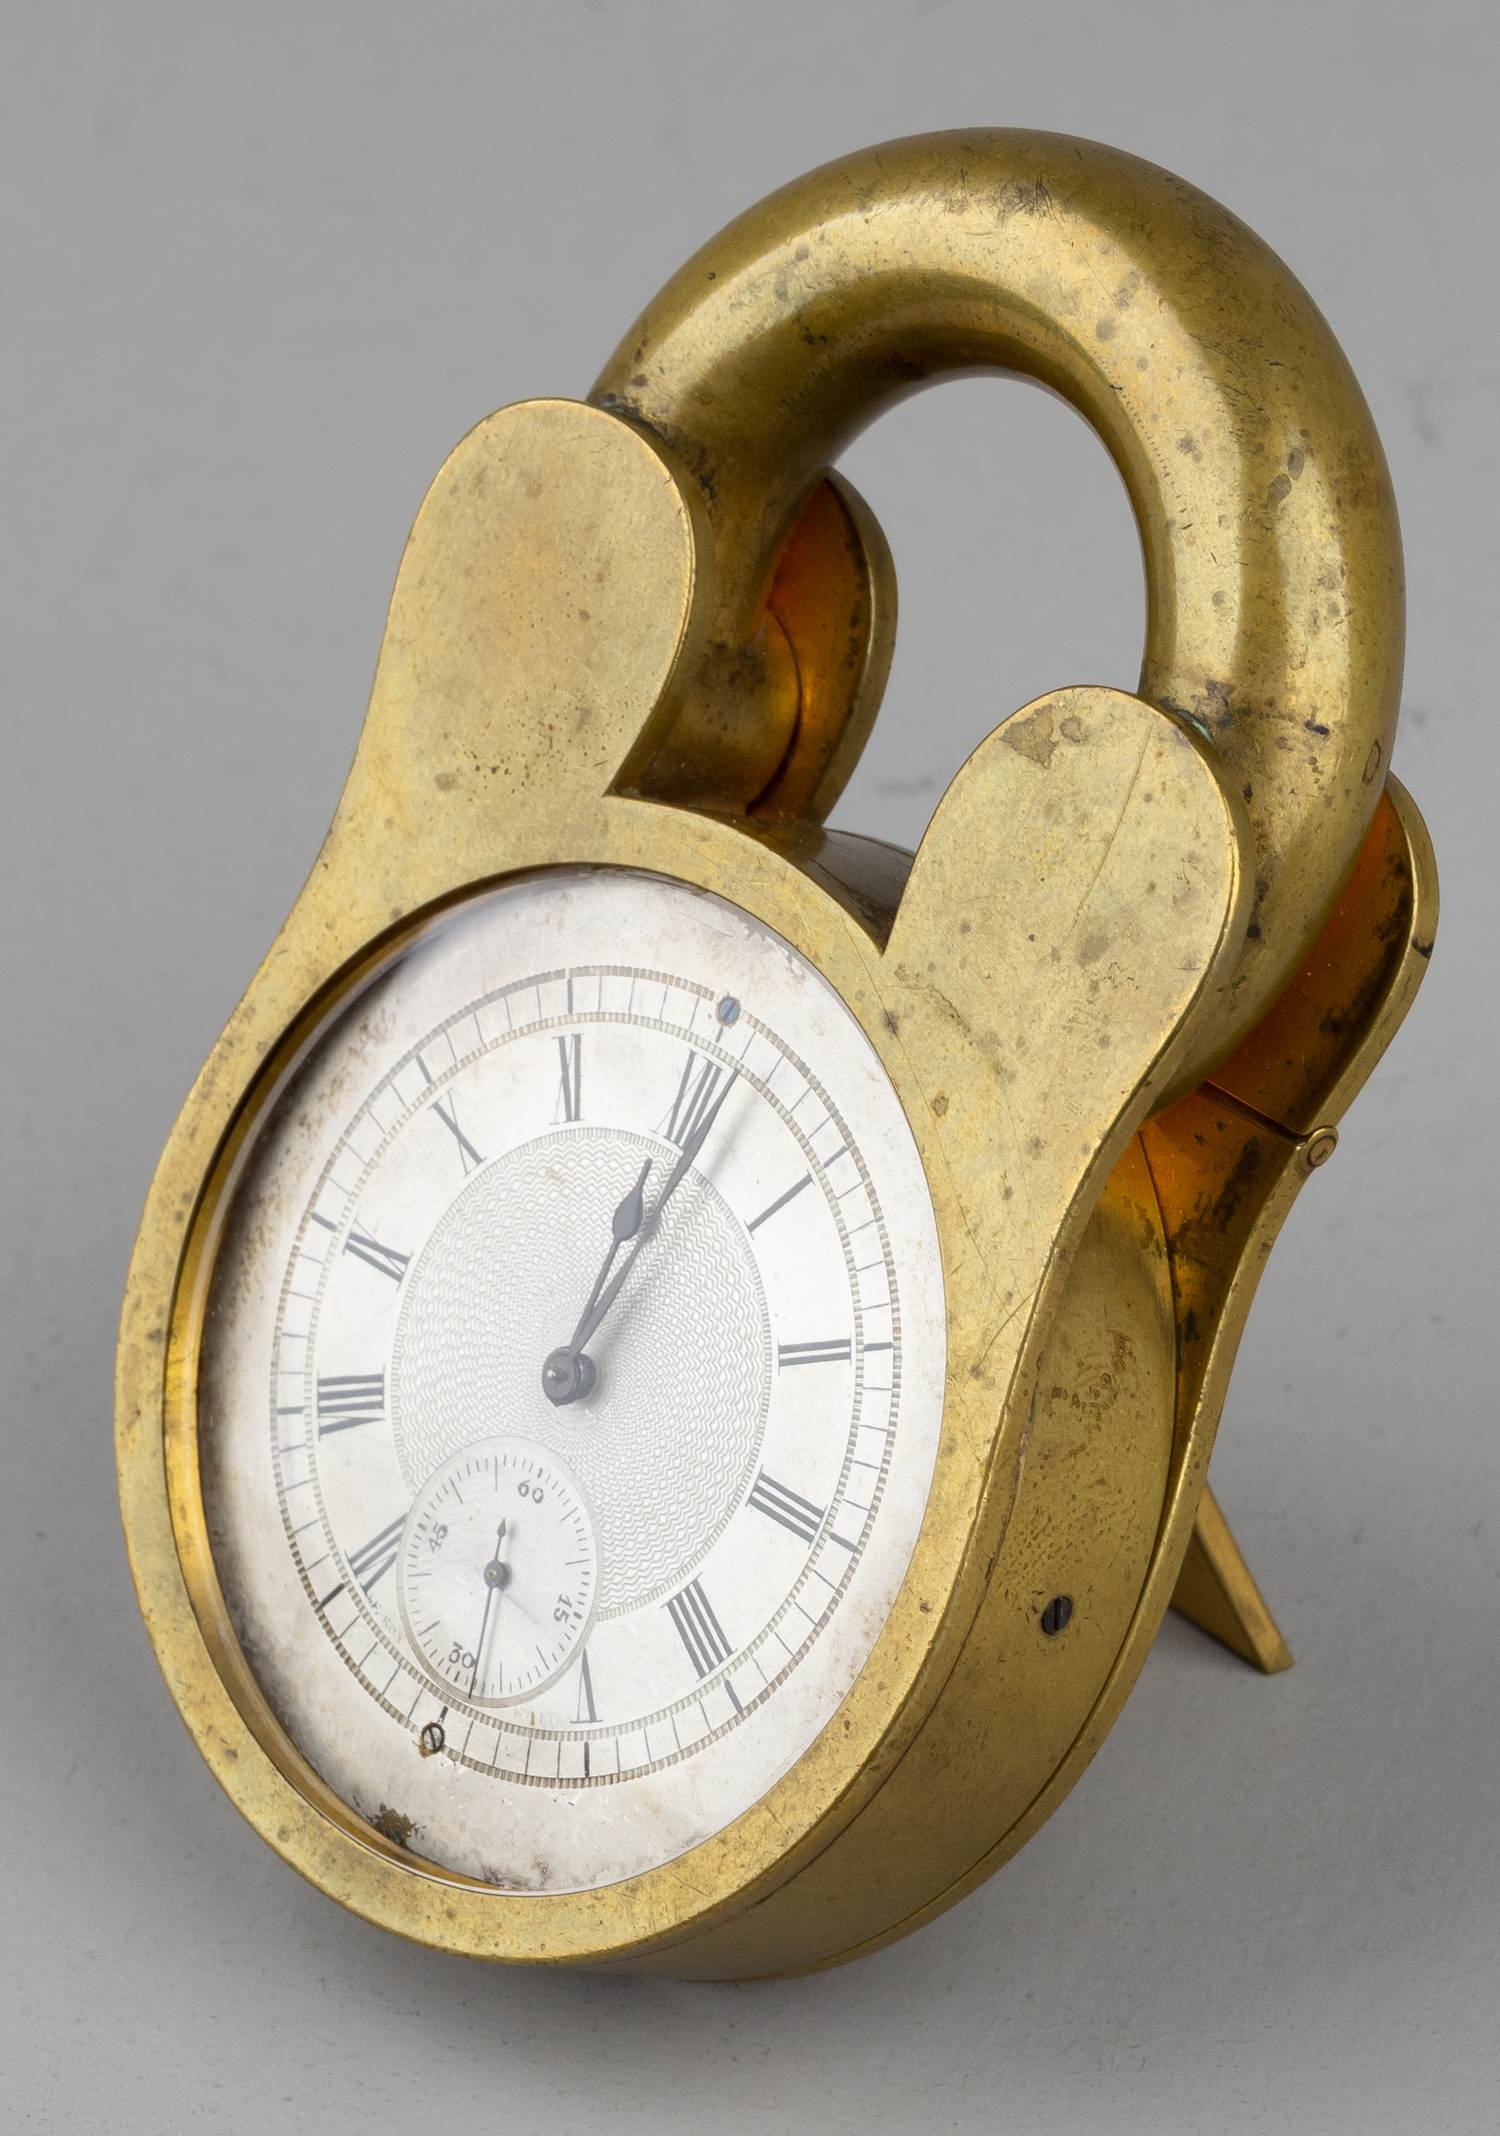 (Редкость. «Поставщик императорских дворов») Часы в виде навесного замка.<br>Франция, фирма Le Roy et Fils, вторая половина XIX века.